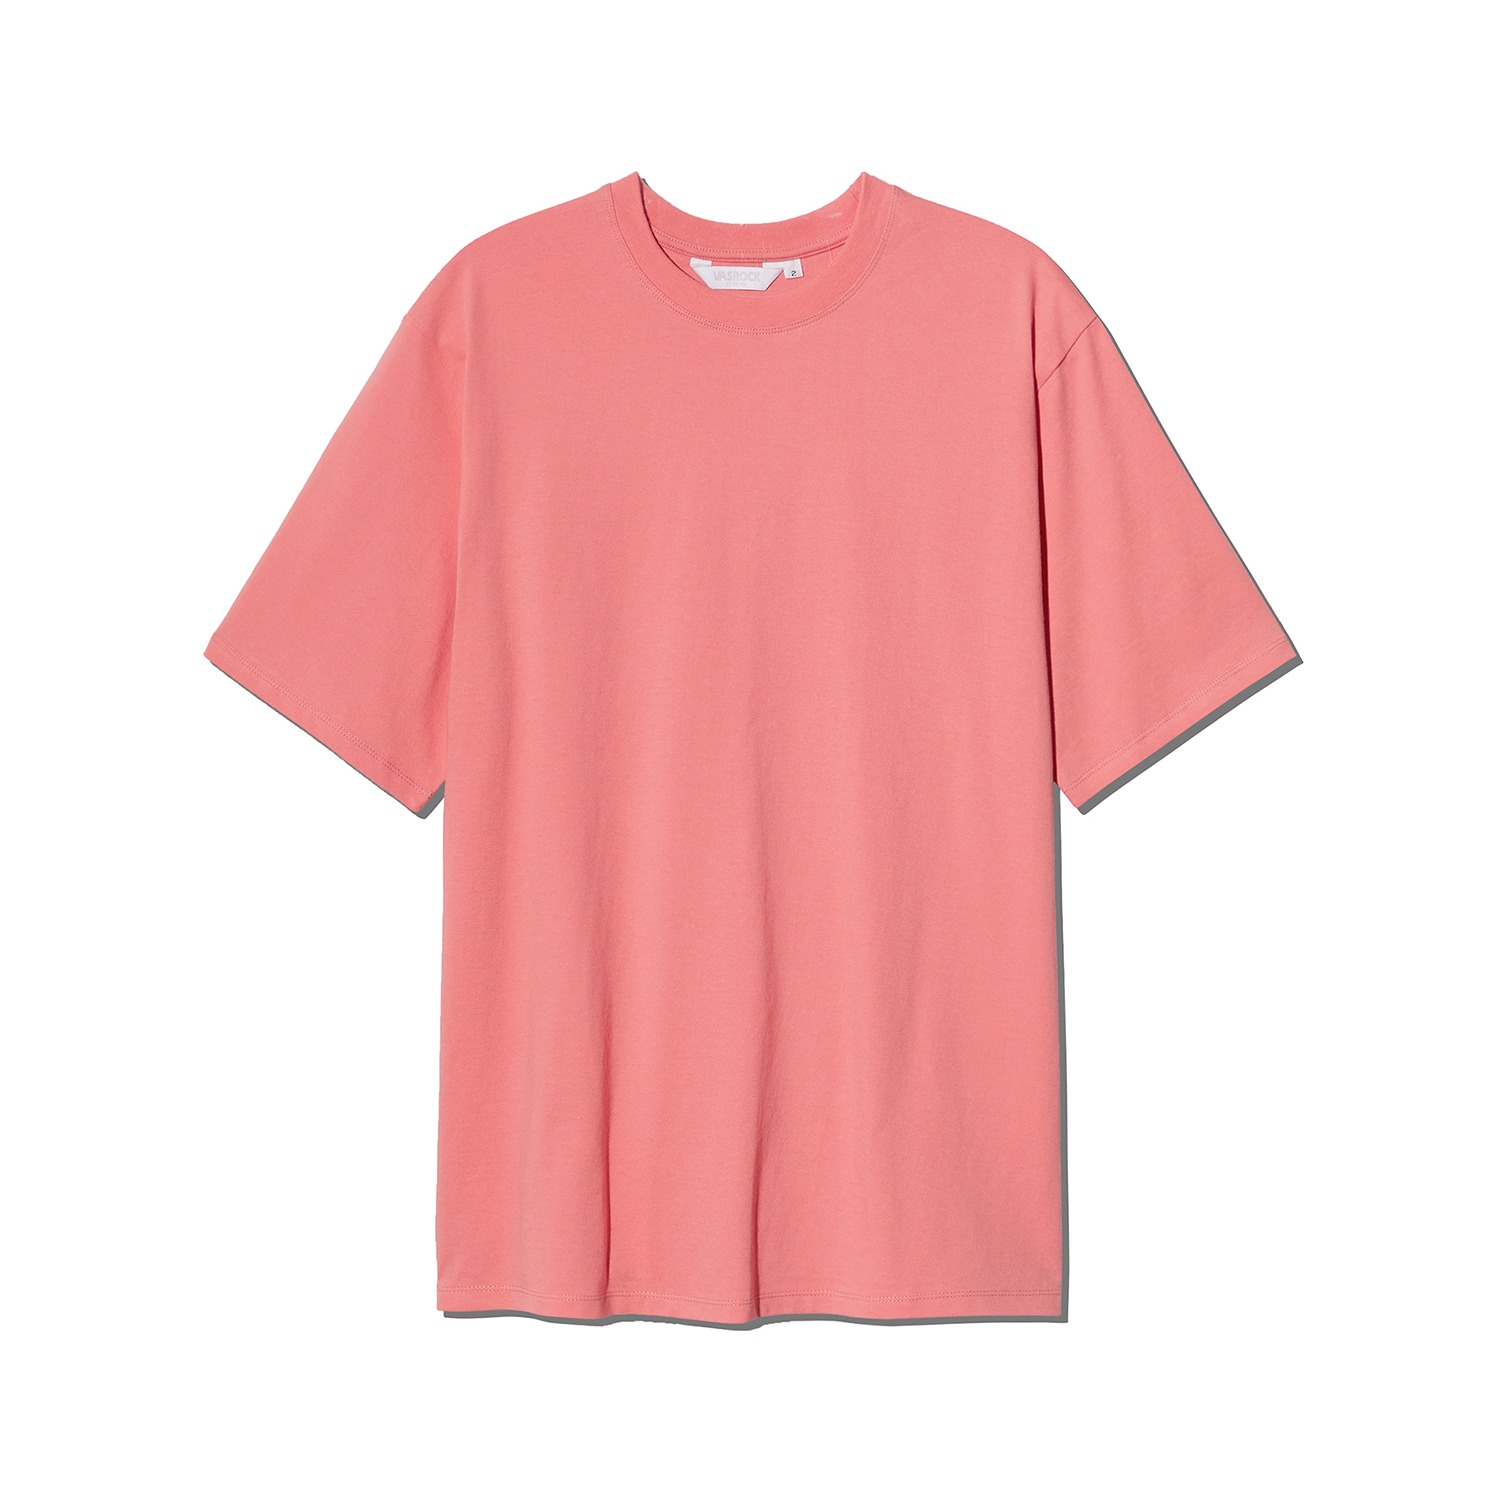 VASROCK,Side Square Short Sleeve T-shirt Pink